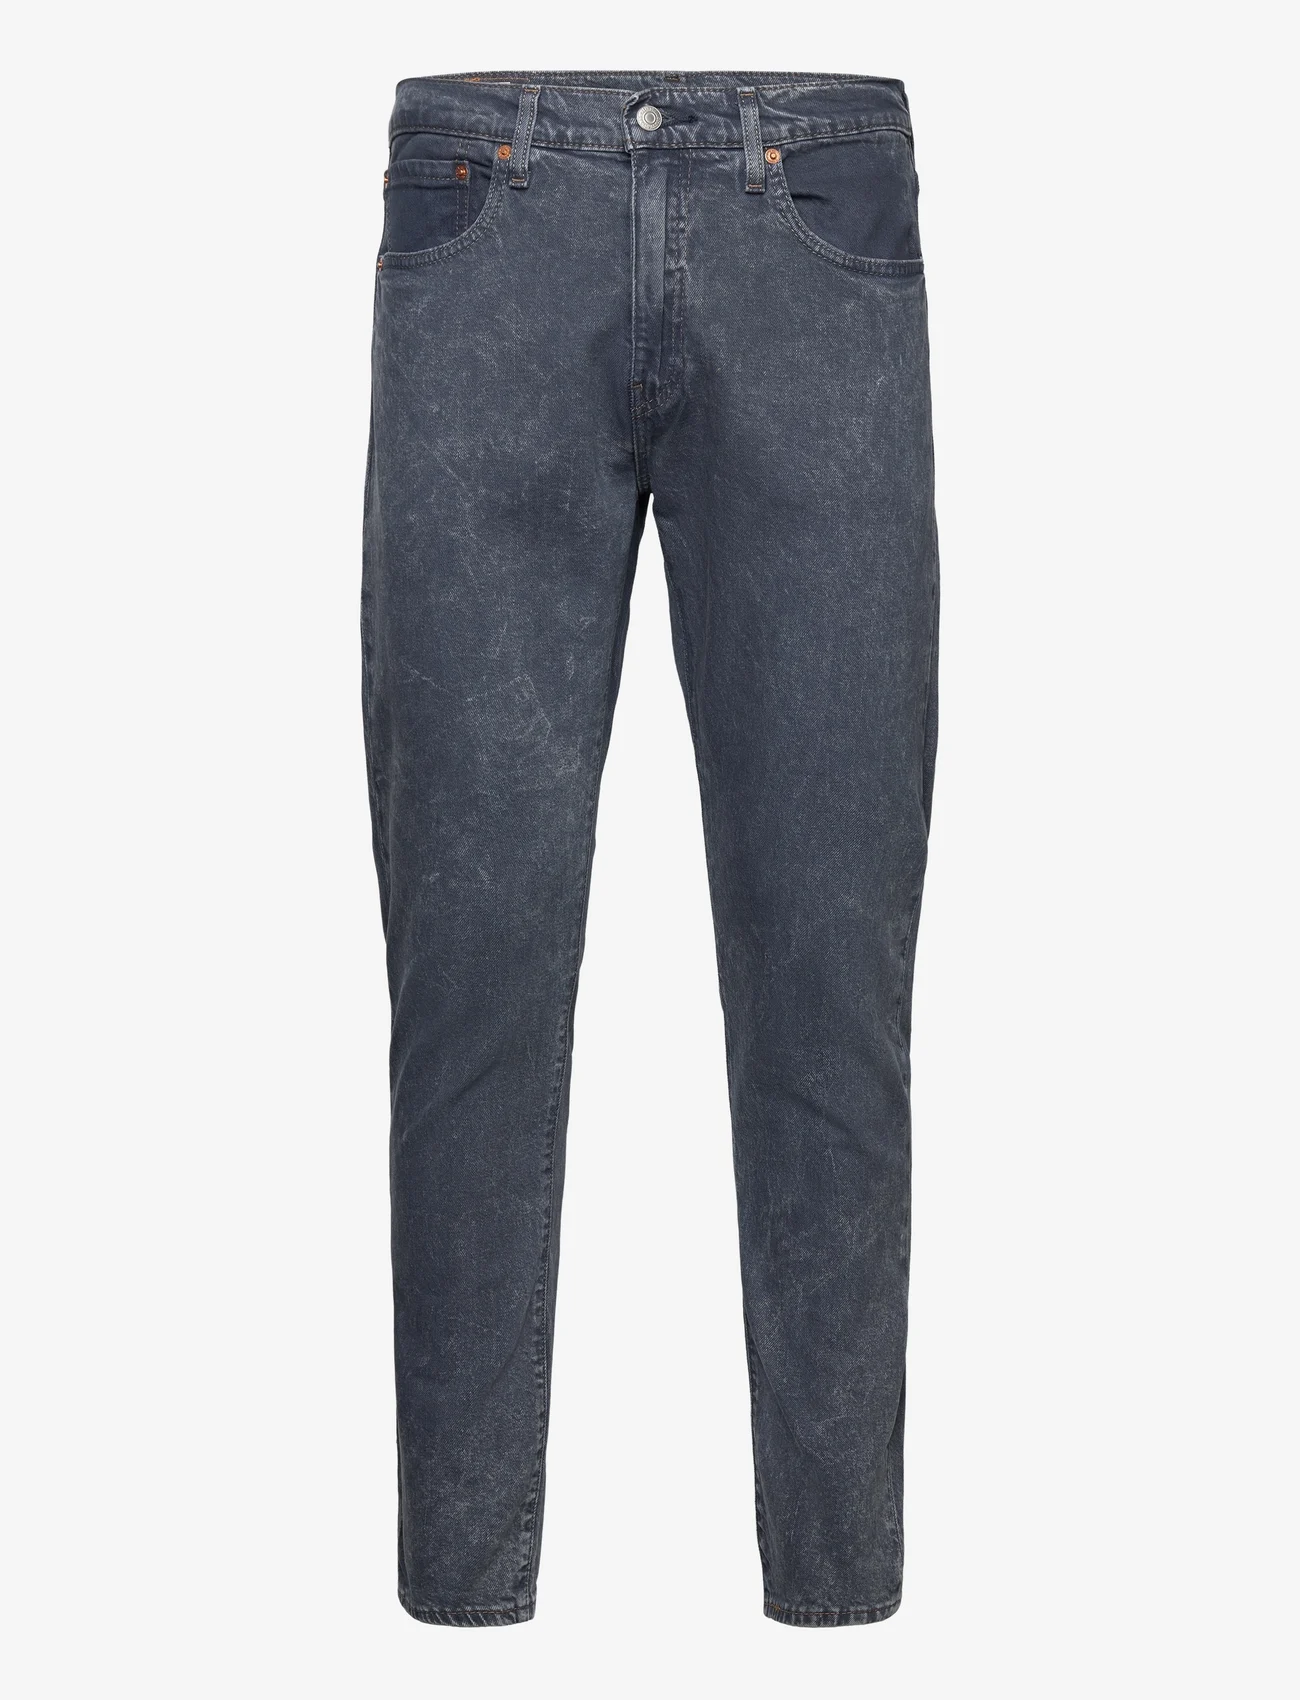 LEVI´S Men - 512 SLIM TAPER FEELS LIKE MAGI - slim jeans - dark indigo - worn in - 0